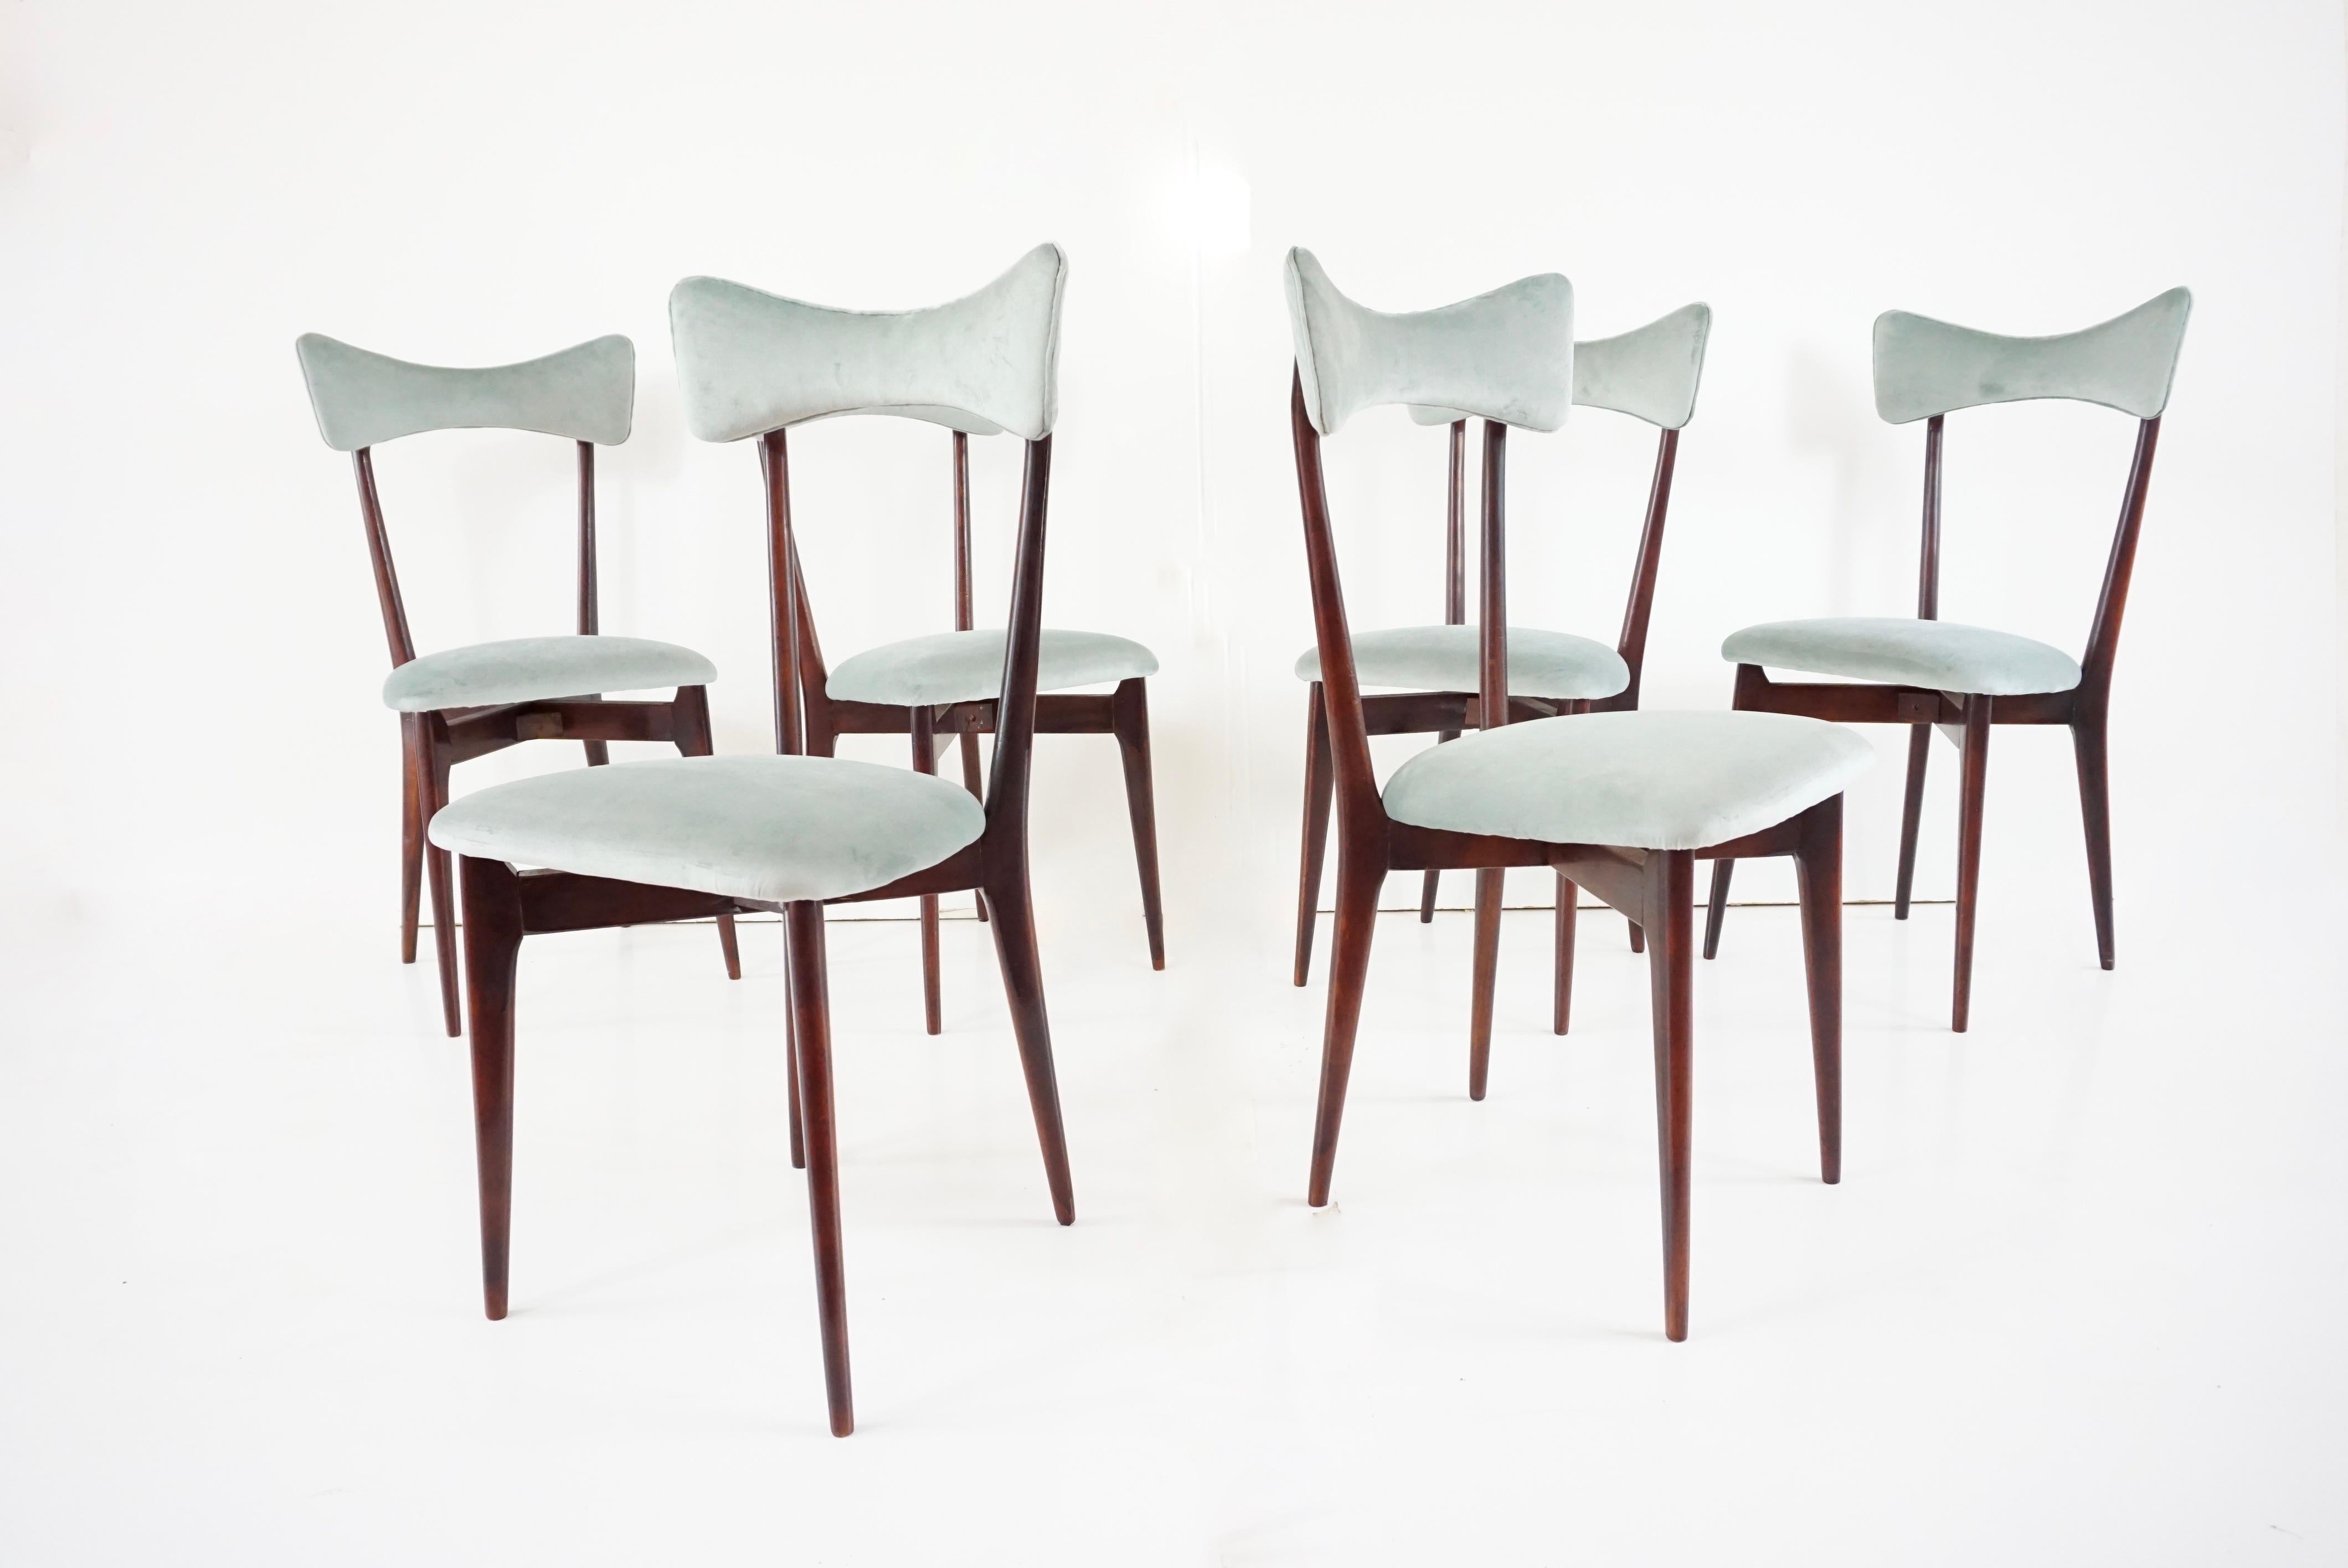 Ensemble de chaises de salle à manger iconiques Ico & Luisa Parisi
fabriqué par Ariberto Colombo, Cantù, vers 1952
cette version avec un dossier en bois est plus tardive ;
la version originale est dotée d'un pad recouvert de cuir synthétique rouge